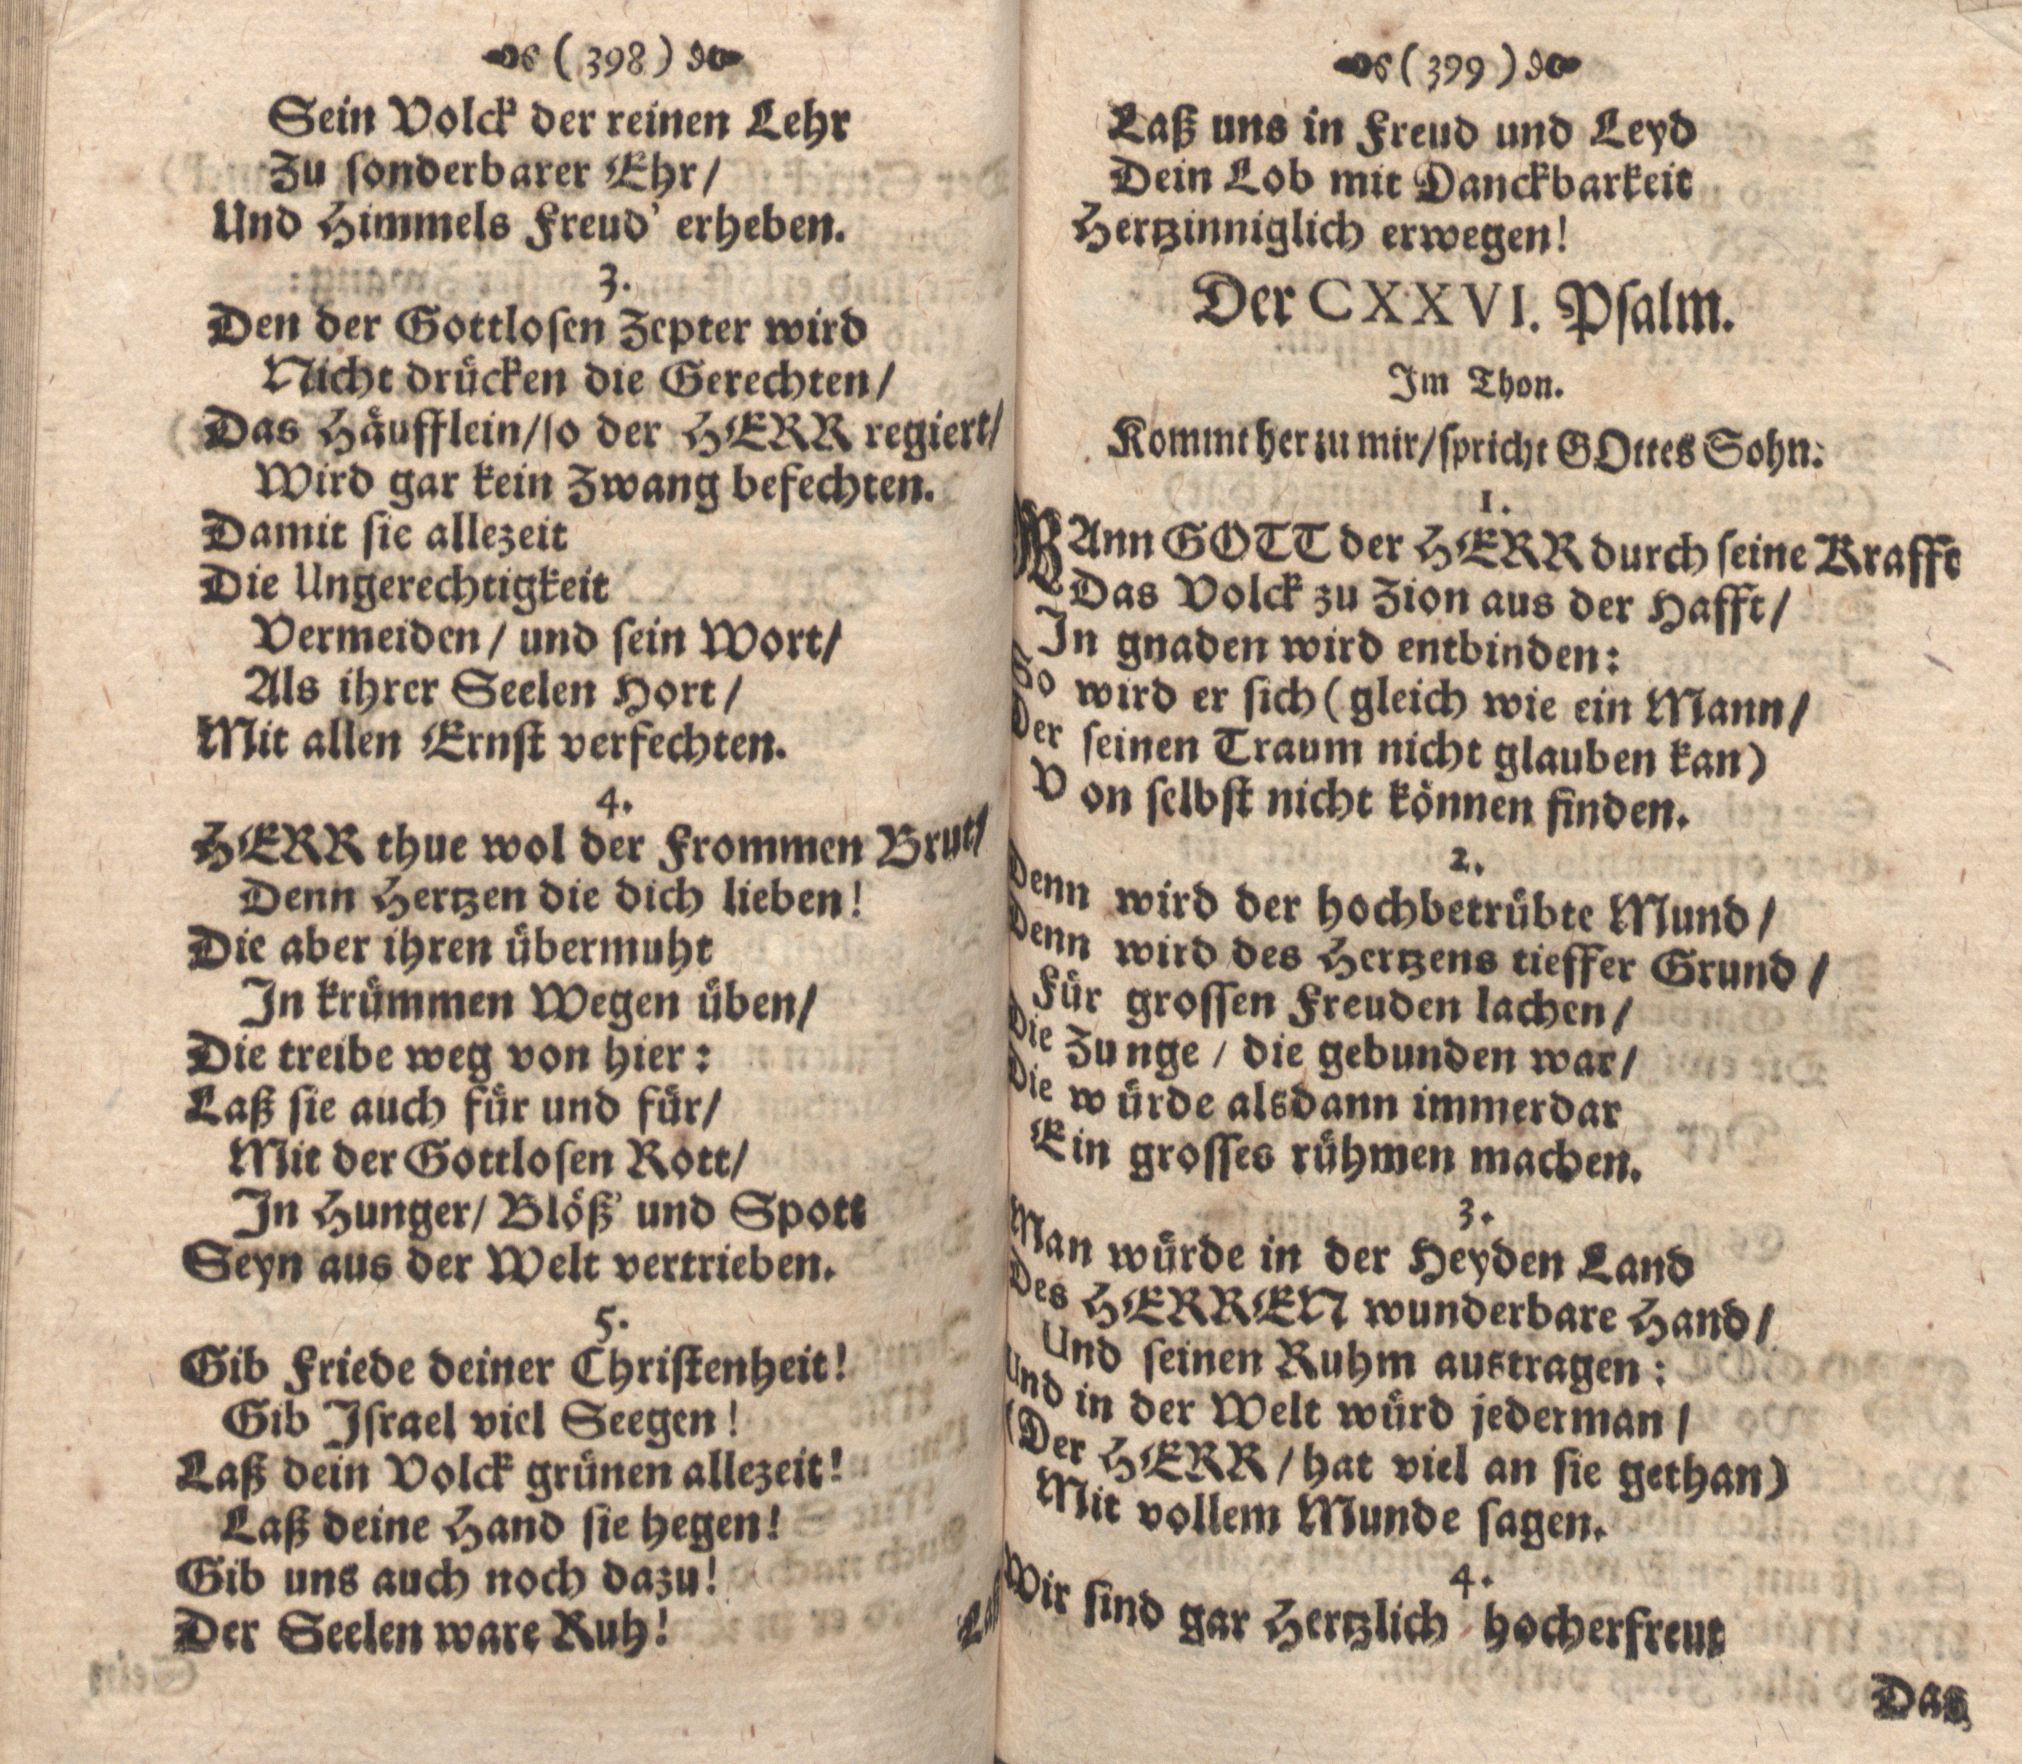 Der Verfolgete, Errettete und Lobsingende David (1686) | 200. (398-399) Main body of text